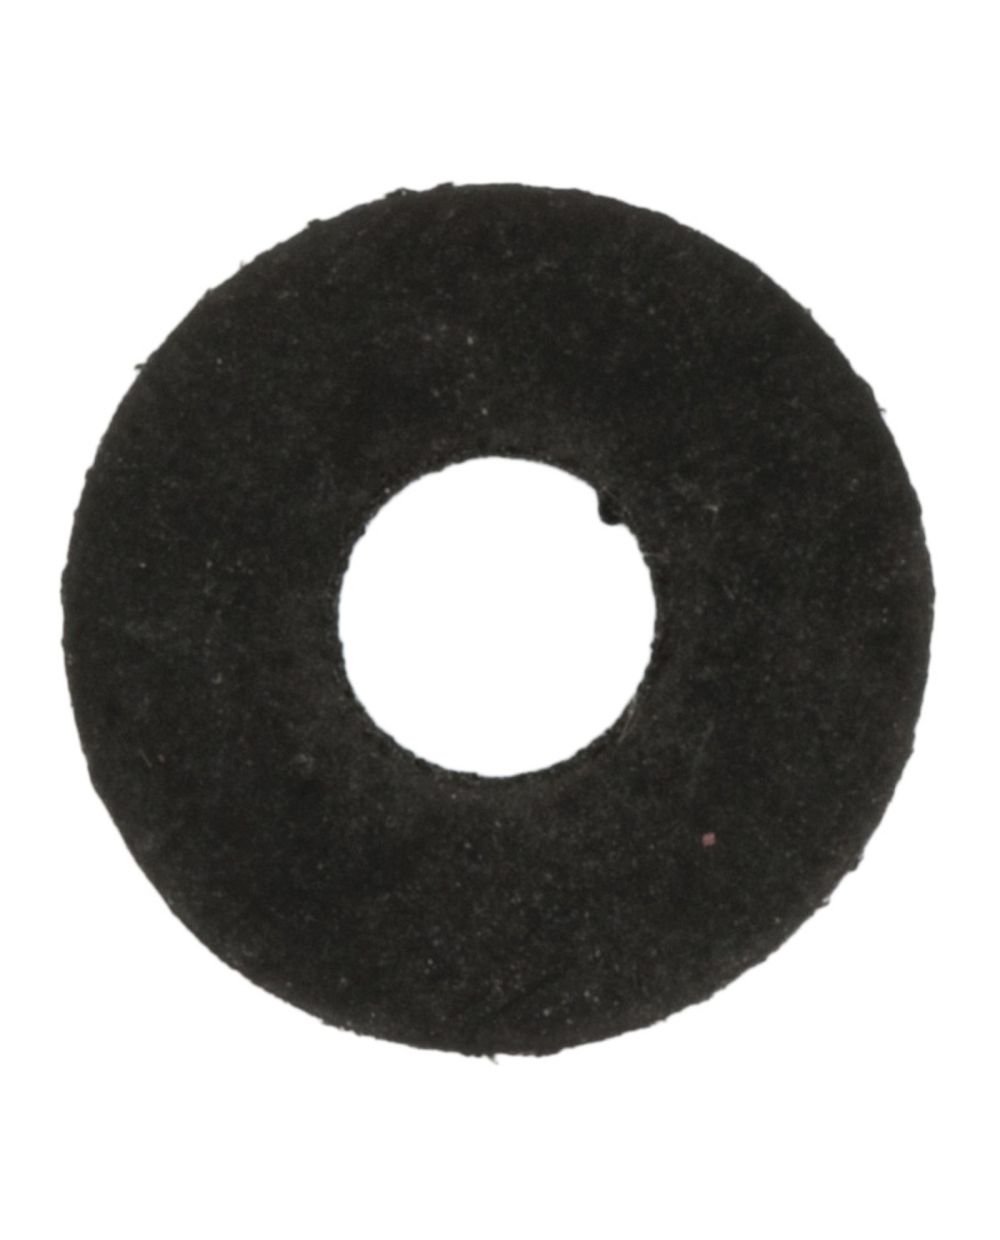 600 Pcs Noir Nylon Caoutchouc Rondelle Plate Assortiment Kit pour